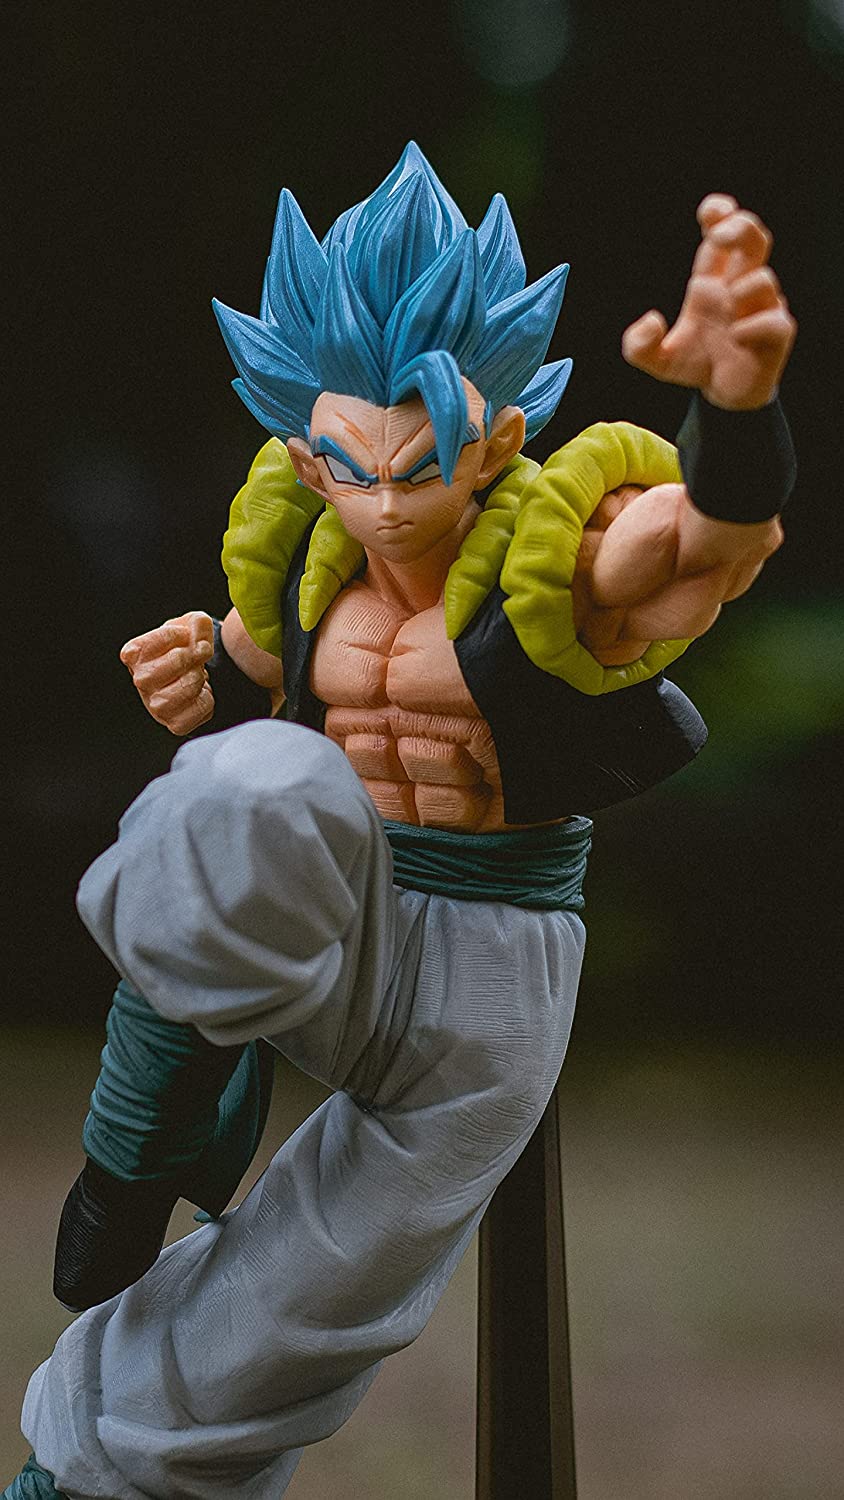 Figurine DBZ - Super Saiyan God Super Saiyan Gogeta Son Goku God!! Vol 13 20cm - 4